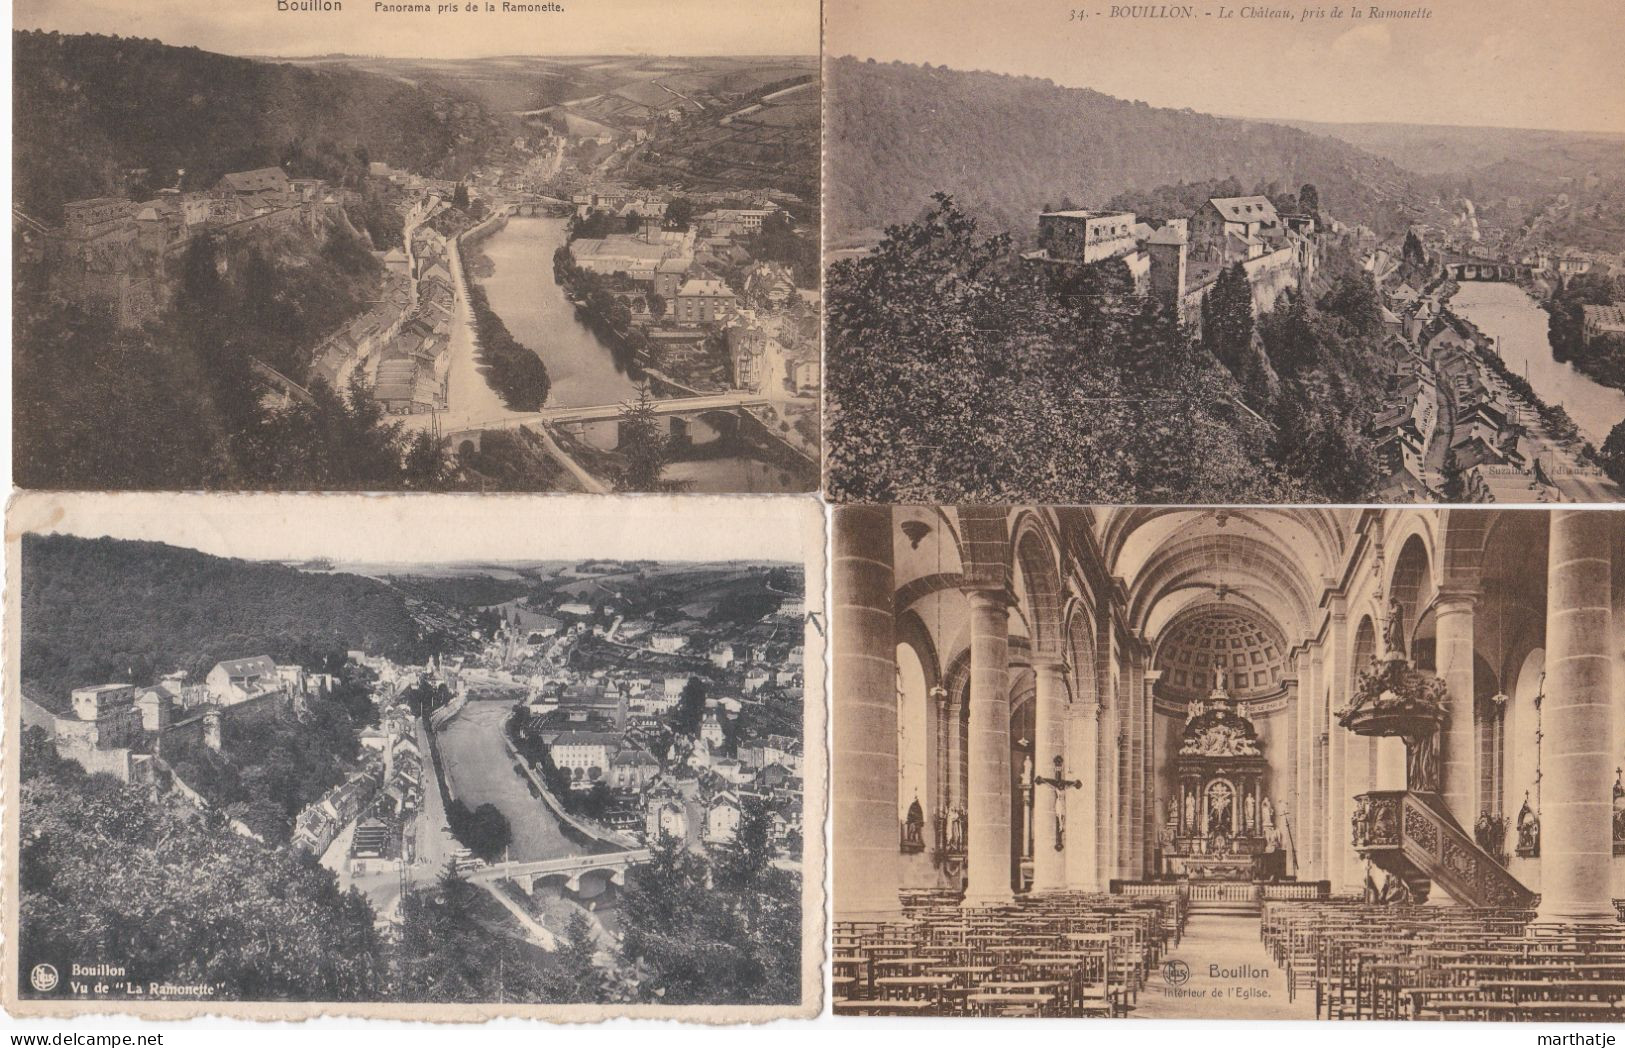 39 Cartes Postales De Bouillon - Province Luxemburg - Belgique - Collections & Lots